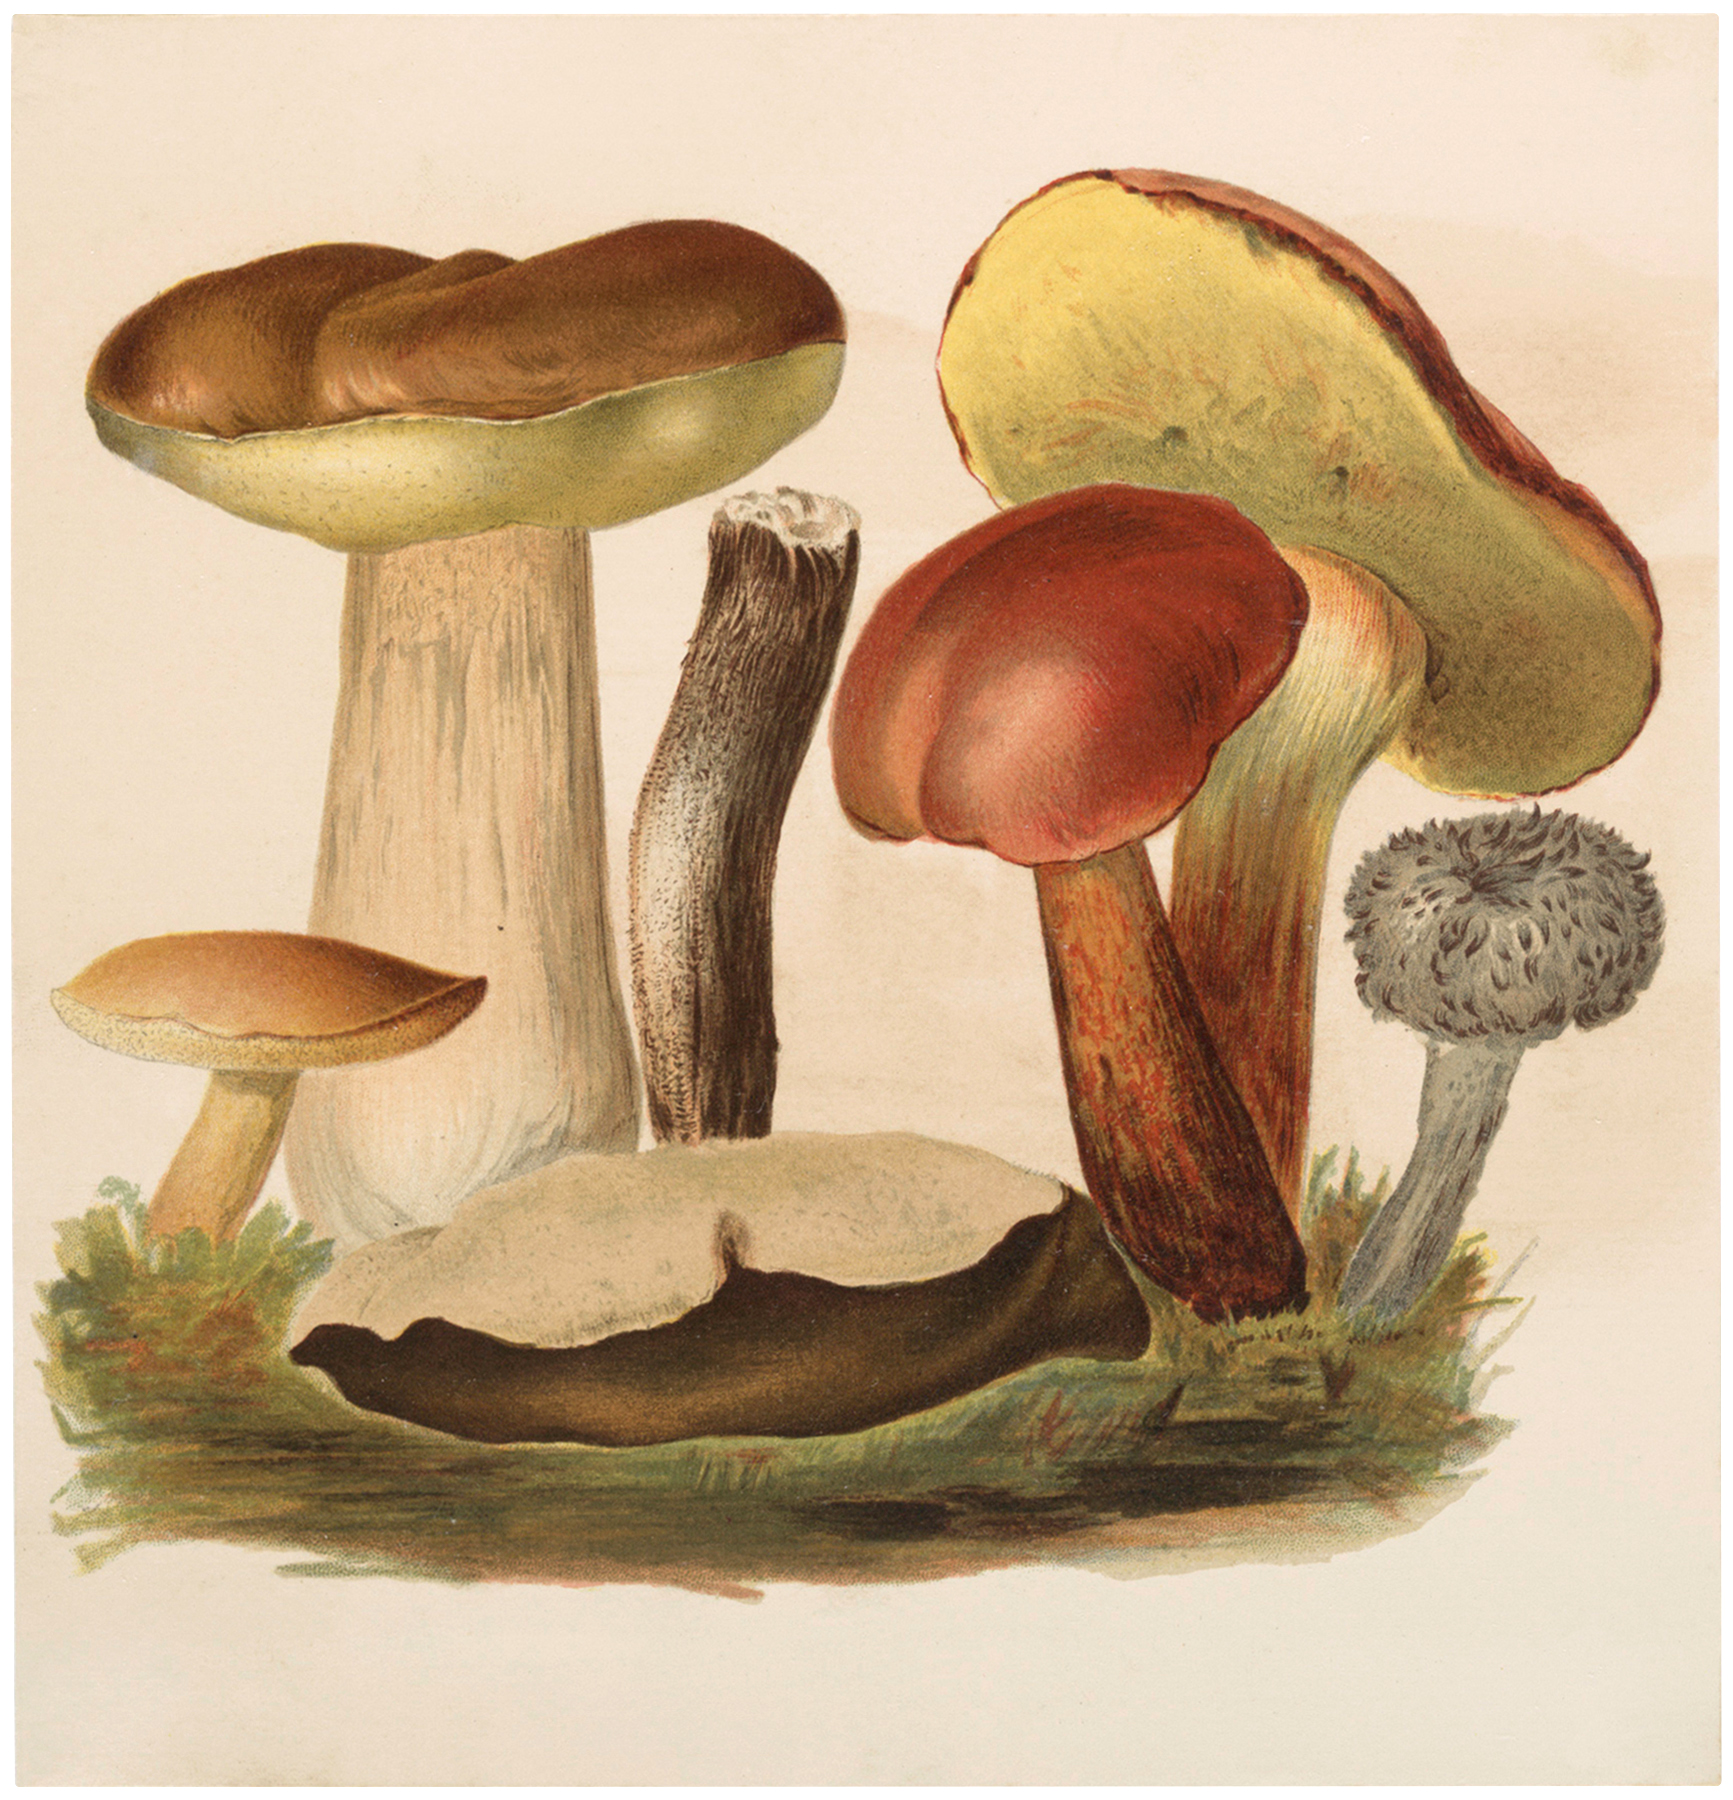 Vintage Wild Mushrooms Image! - The Graphics Fairy